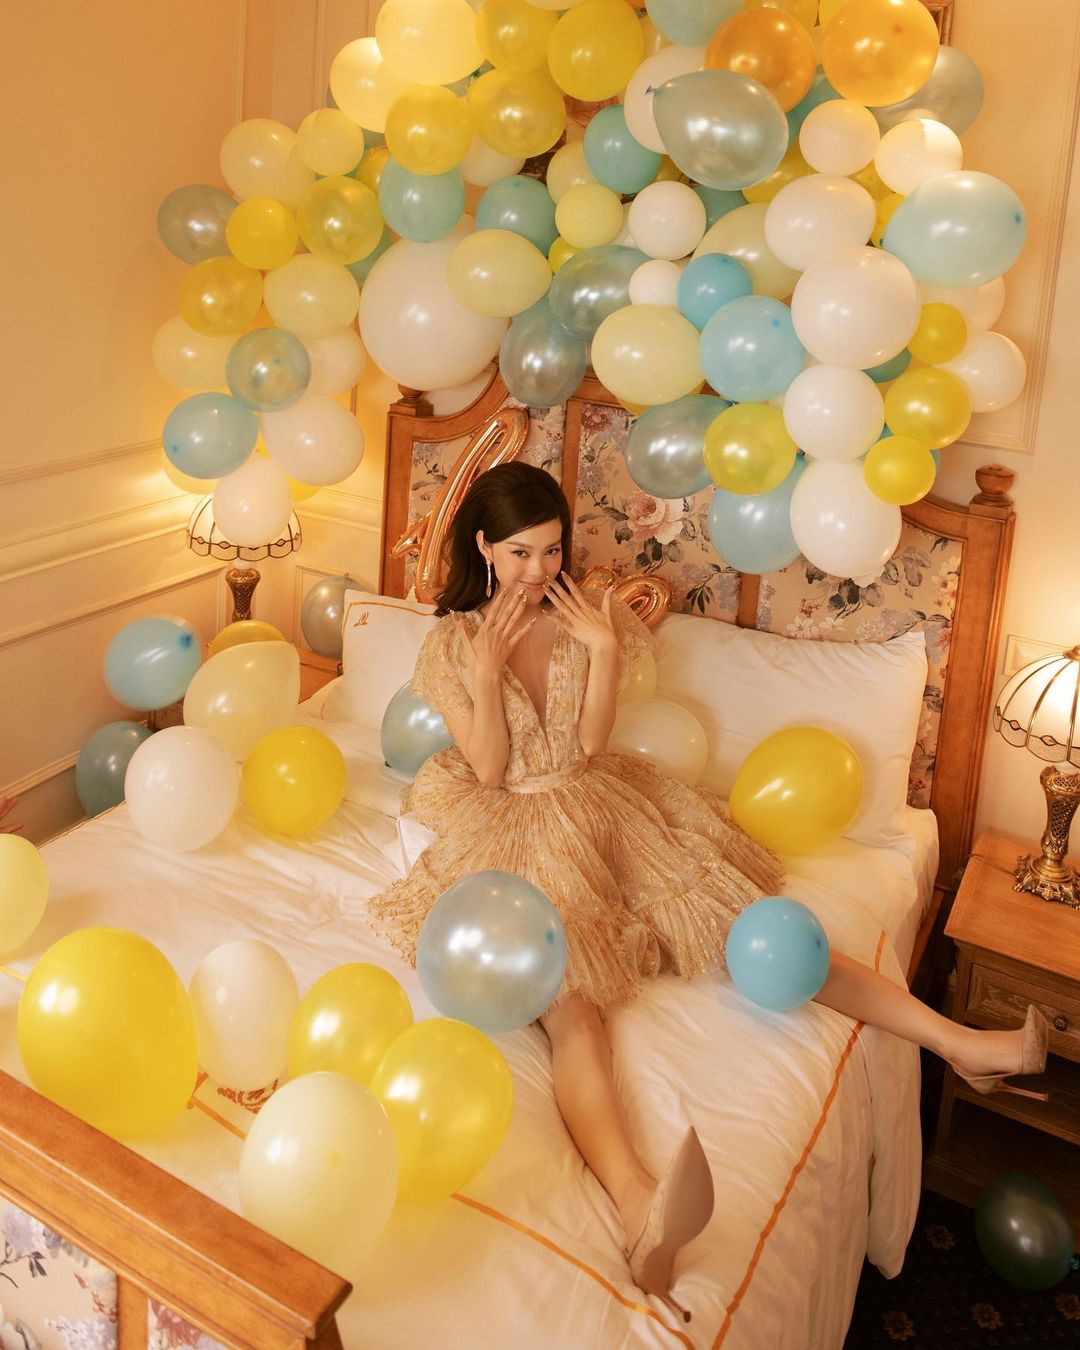 Minh Hằng ăn mừng tiệc sinh nhật tuổi 34 ngập tràn bóng bay. Cô diện đầm lộng lẫy, tạo dáng trên giường ngủ sắc màu.